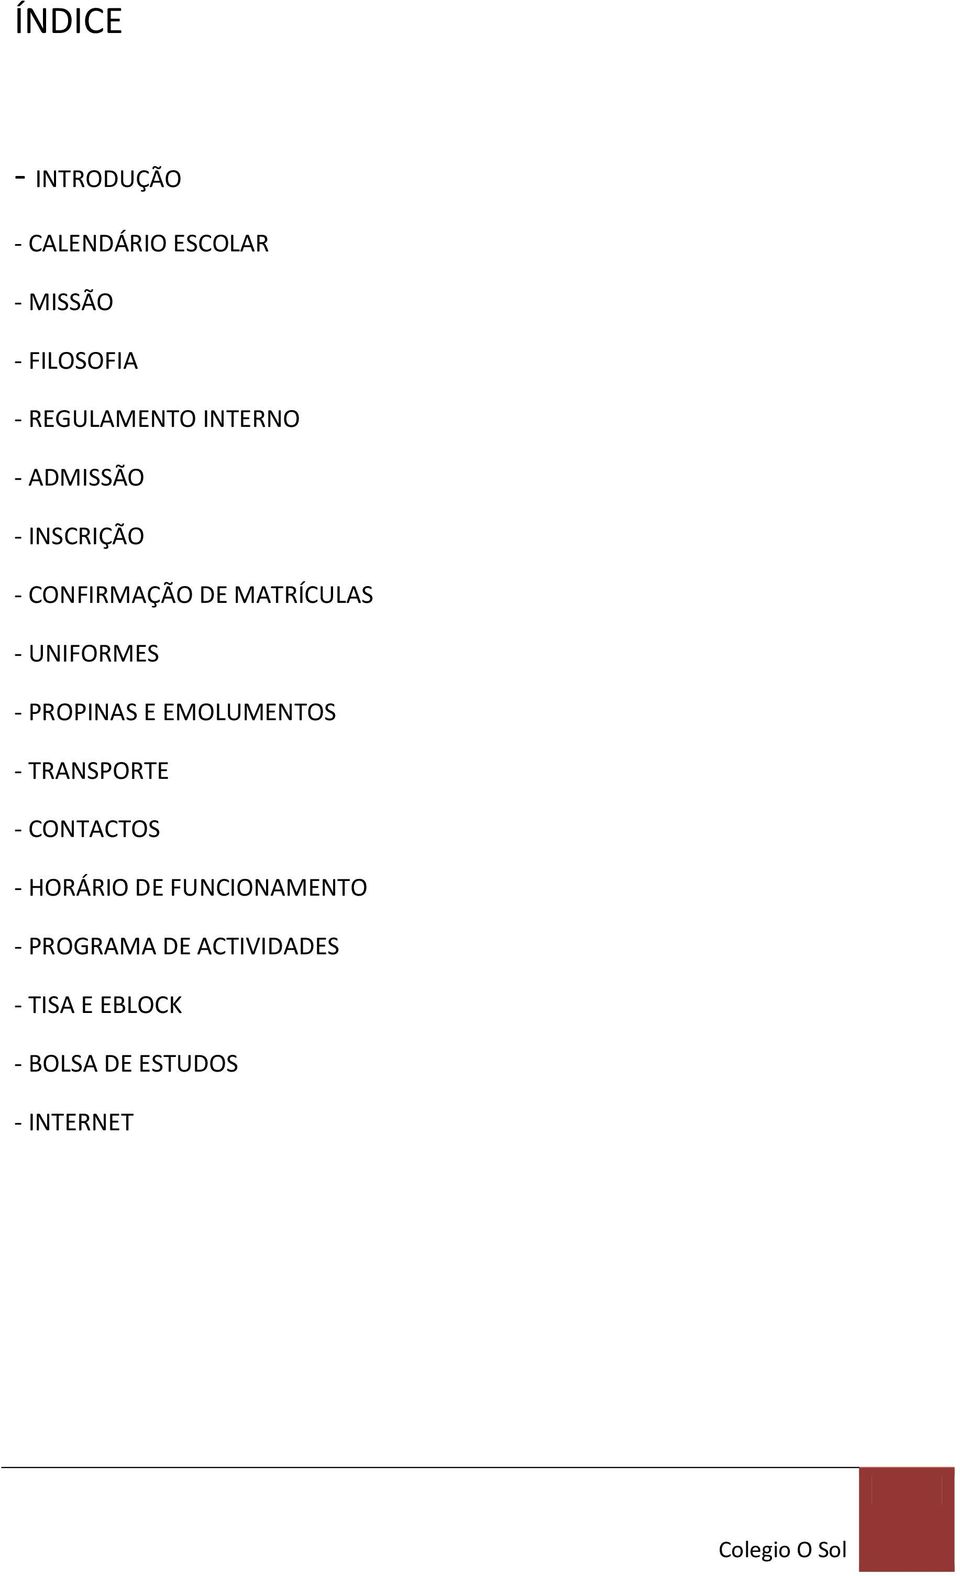 UNIFORMES - PROPINAS E EMOLUMENTOS - TRANSPORTE - CONTACTOS - HORÁRIO DE